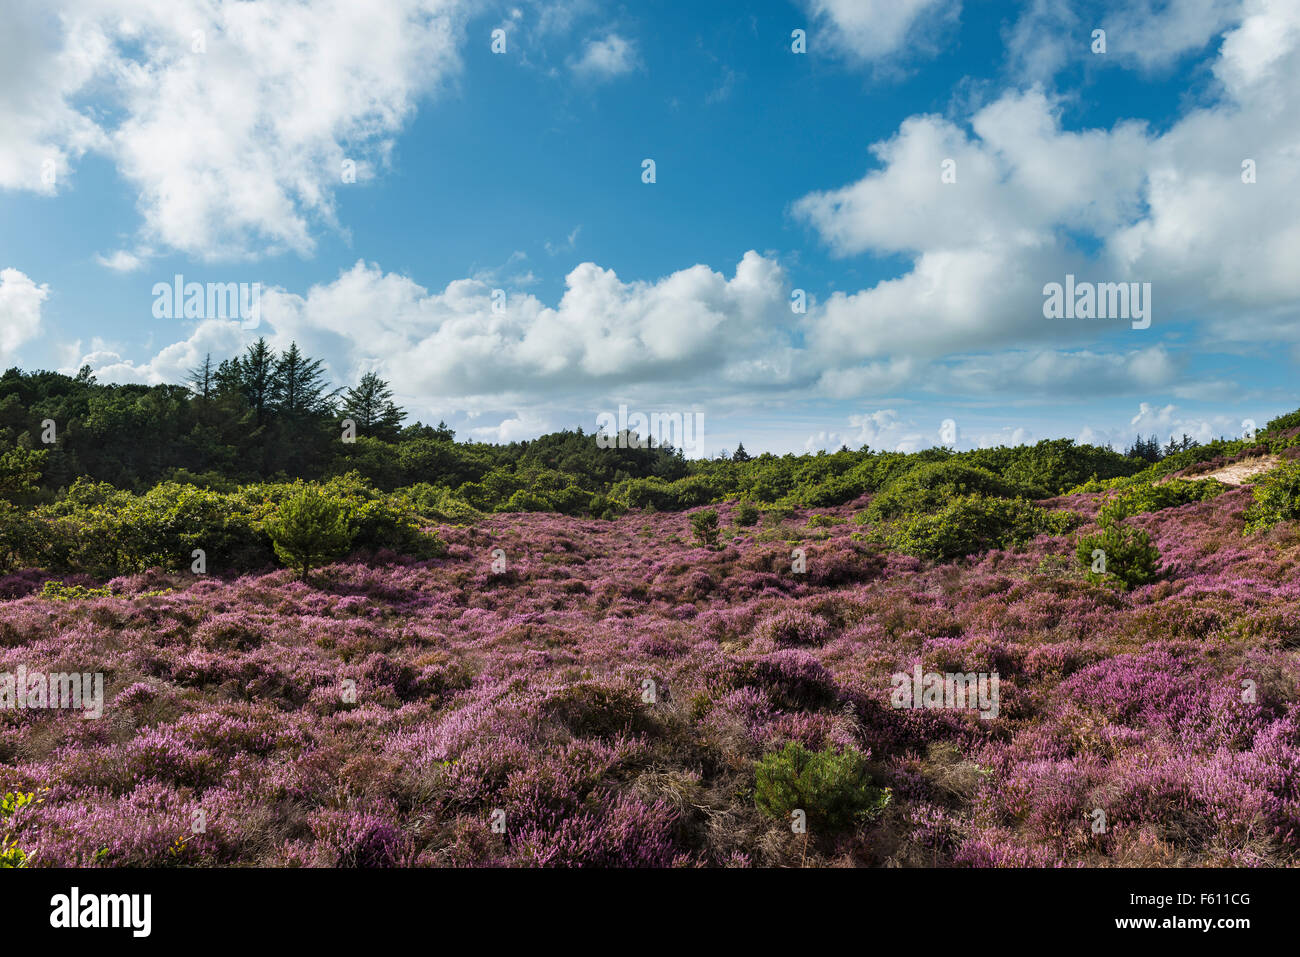 La lande à bruyère à fleurs (Calluna vulgaris), Oksböl, région du sud du Danemark, Danemark Banque D'Images